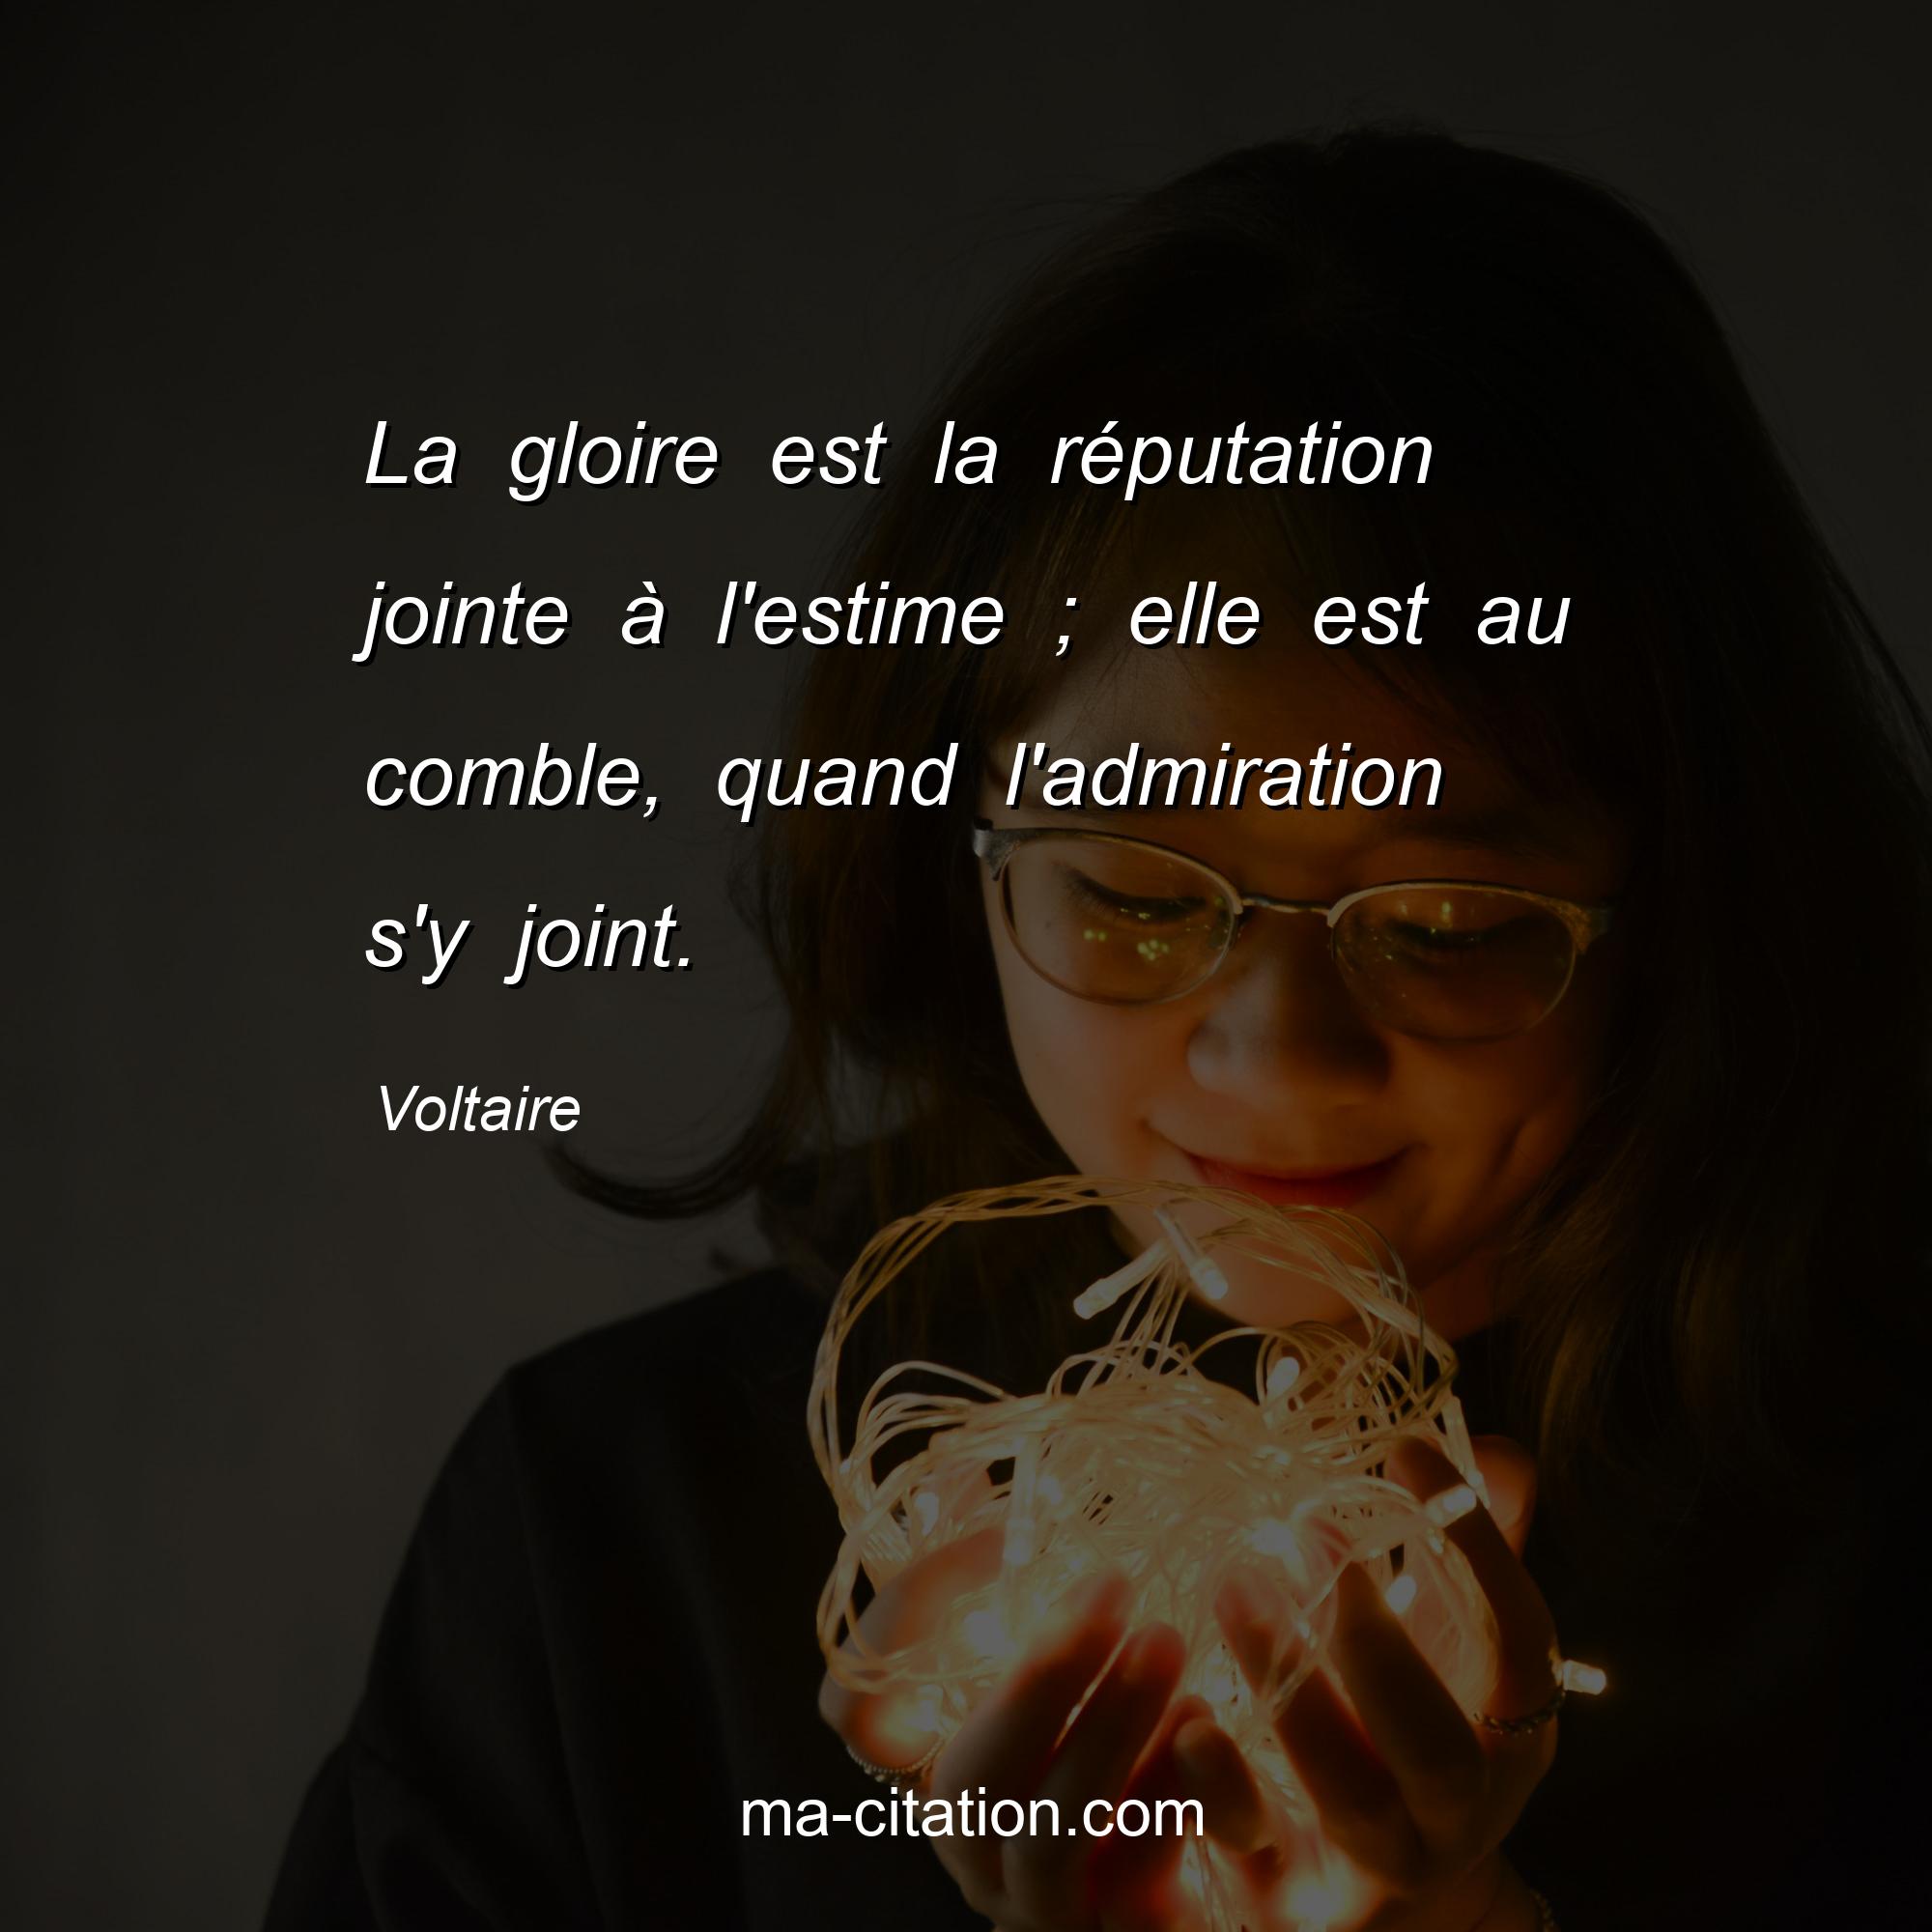 Voltaire : La gloire est la réputation jointe à l'estime ; elle est au comble, quand l'admiration s'y joint.